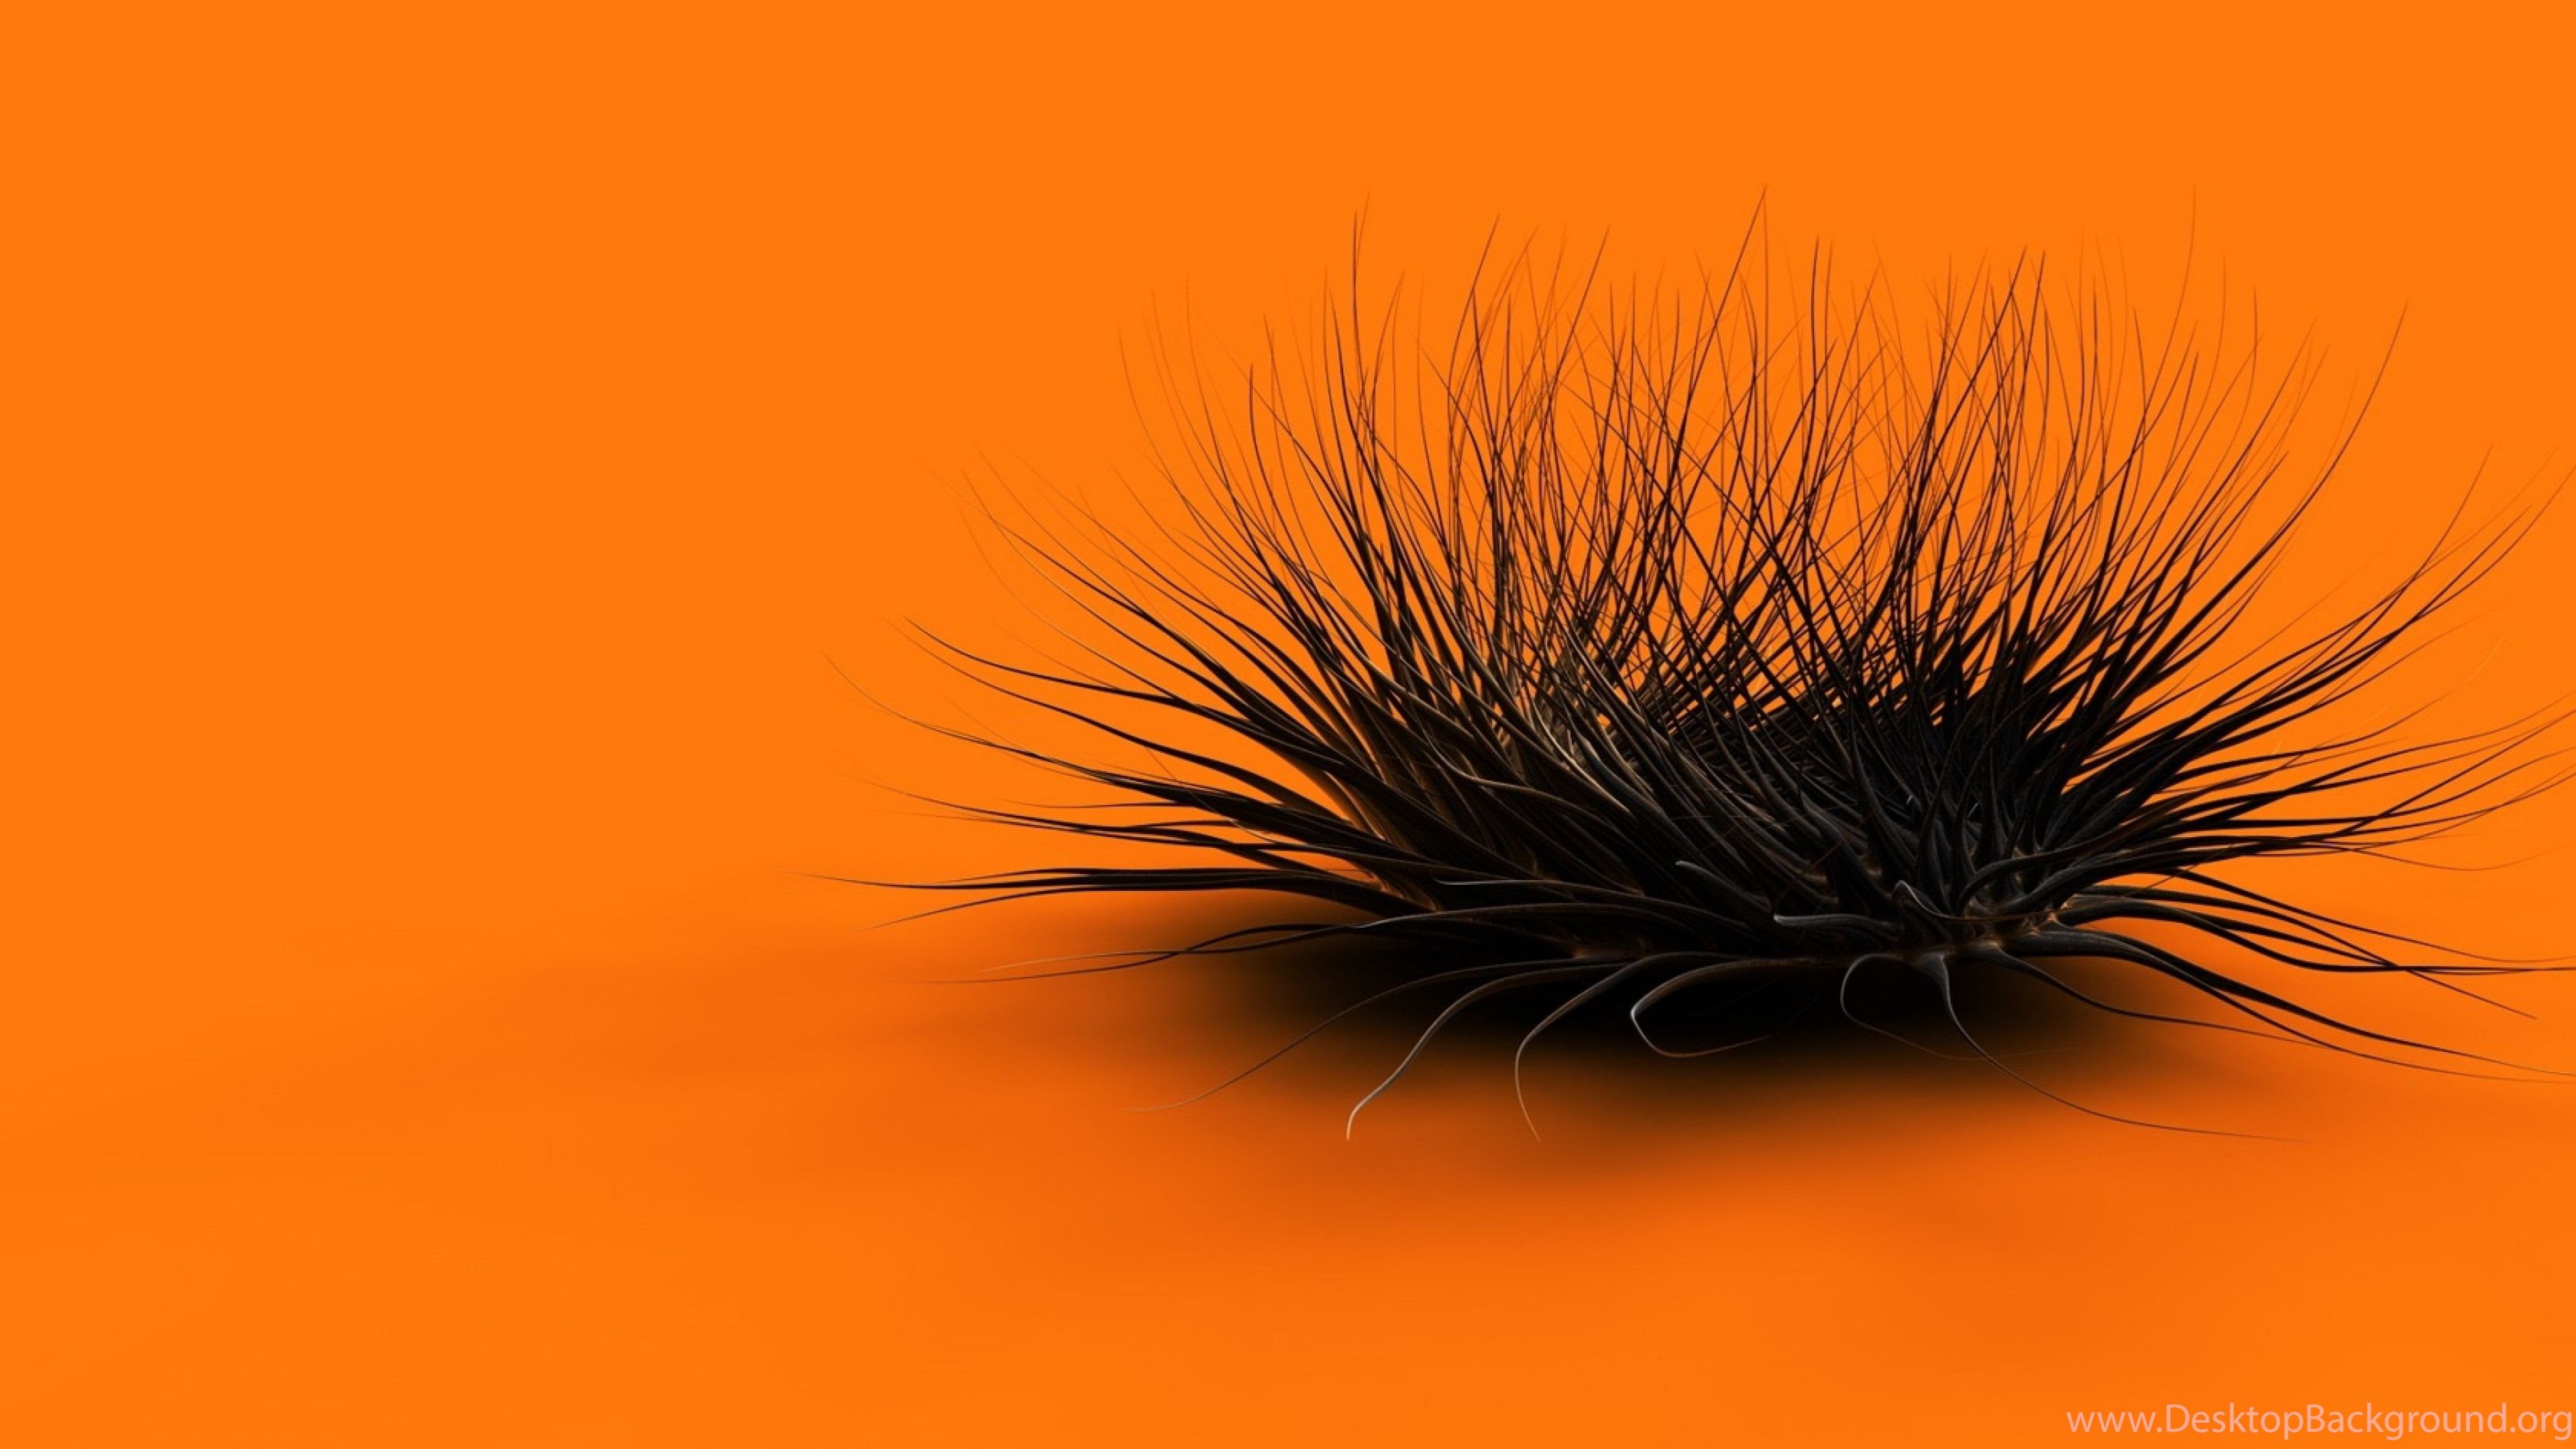 Download Wallpaper 3840x2160 Orange, Black, Feathers, Form 4K. Desktop Background